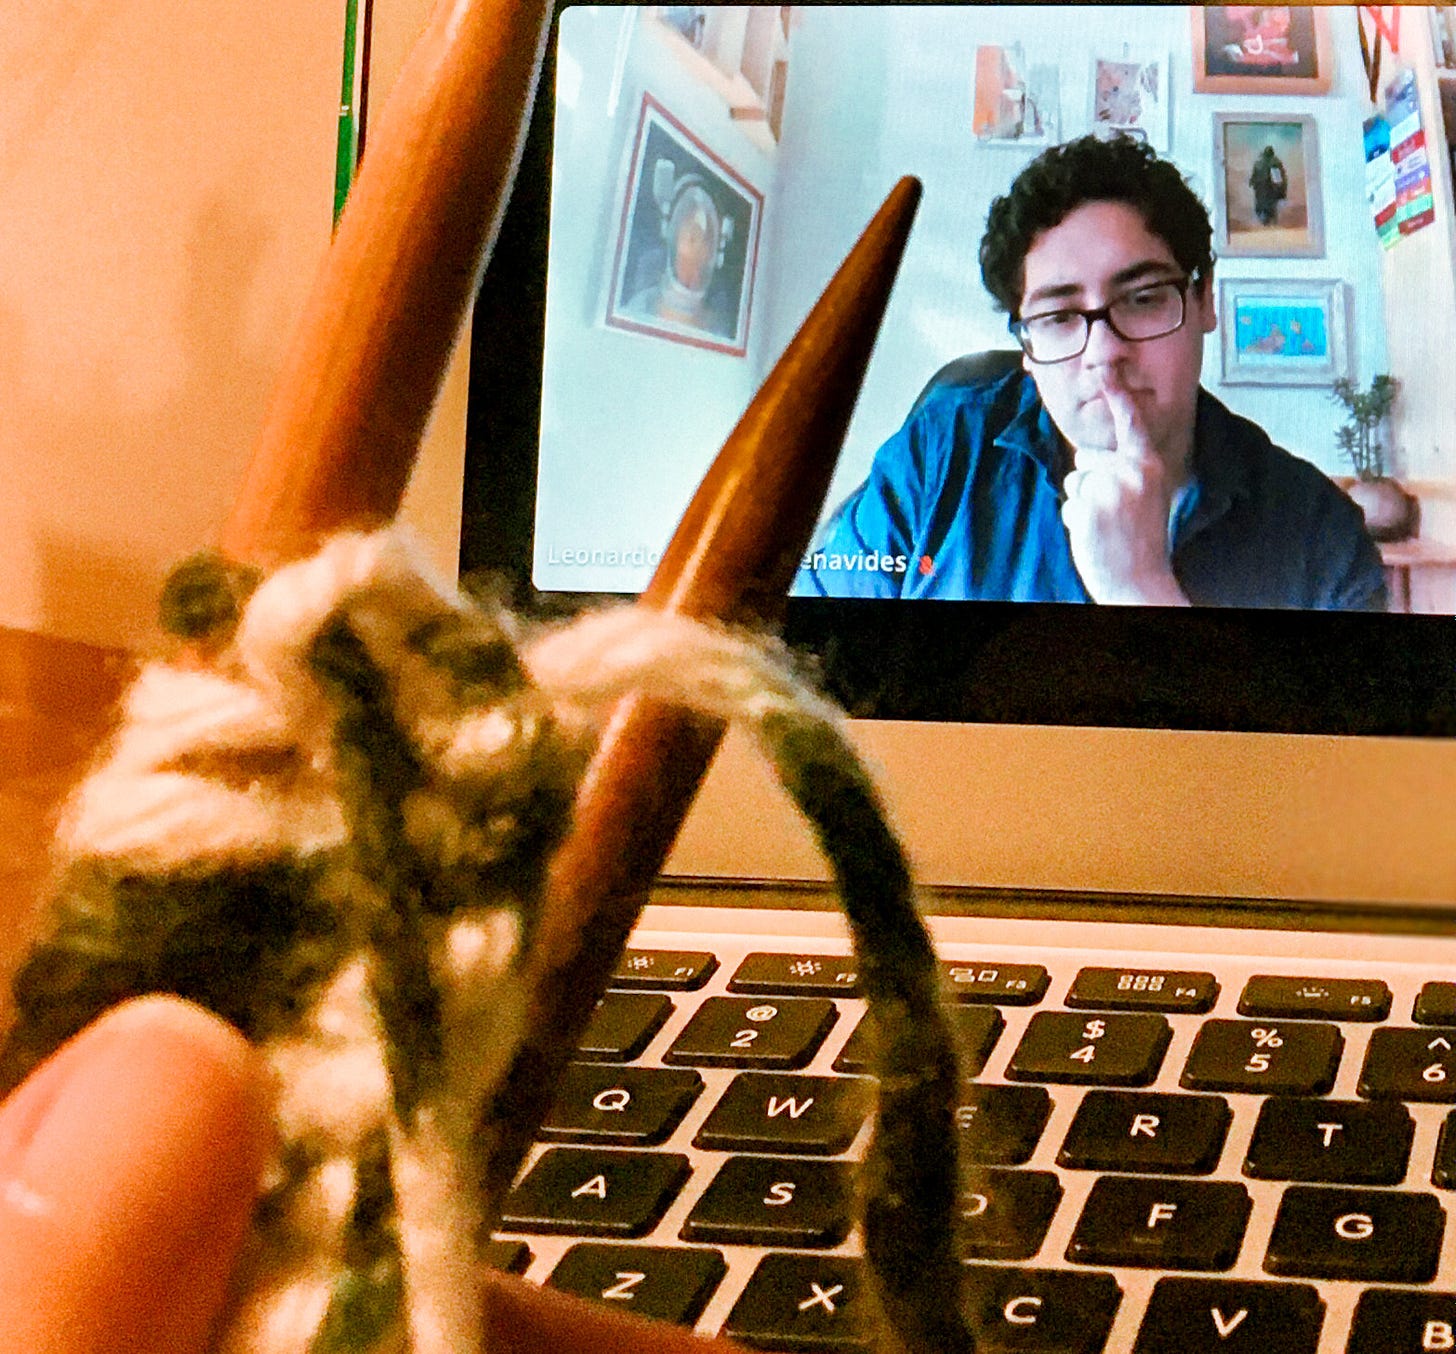 Na tela de computador, se observa um homem moreno, de óculos, com semblante pensativo. Em primeiro plano, agulhas de tricô e um teclado.